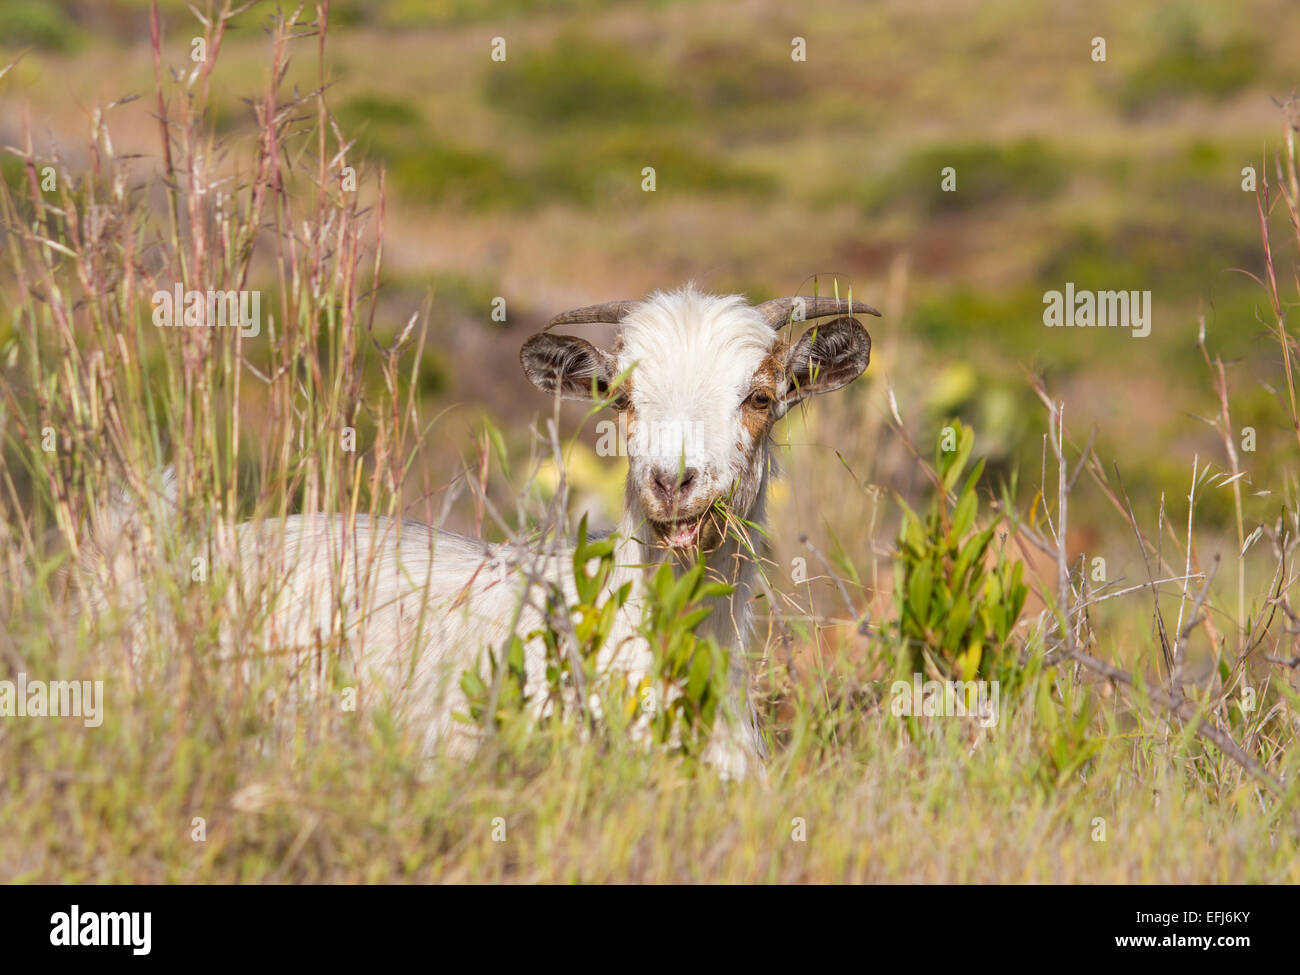 Ziege (Capra) Fütterung auf Rasen, Tall grass, La Palma, Kanarische Inseln, Spanien Stockfoto